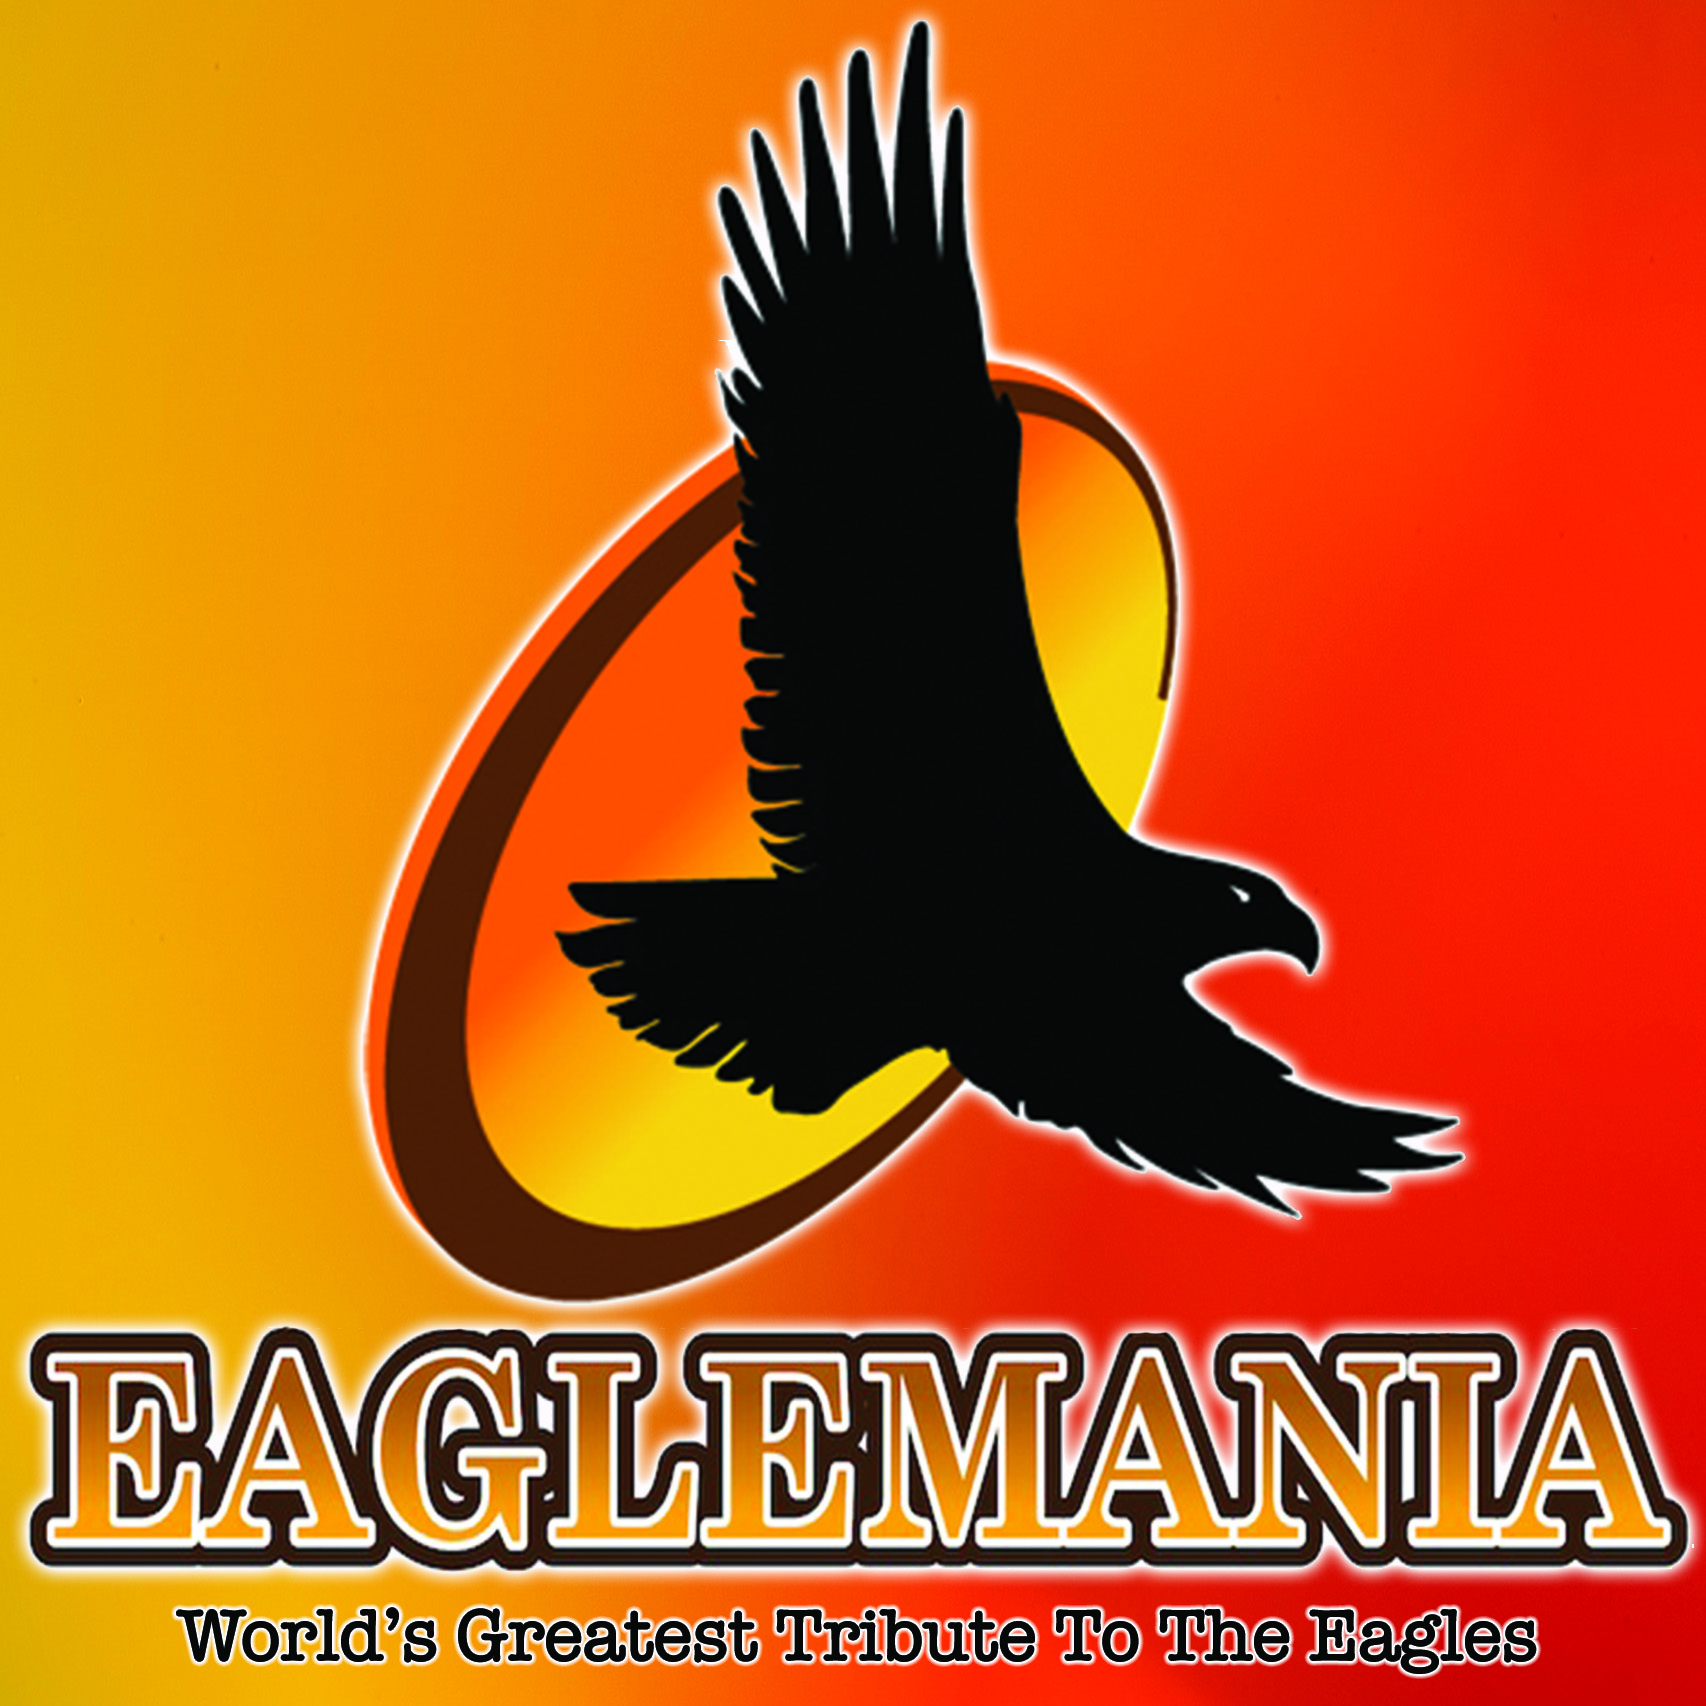 Eaglemania